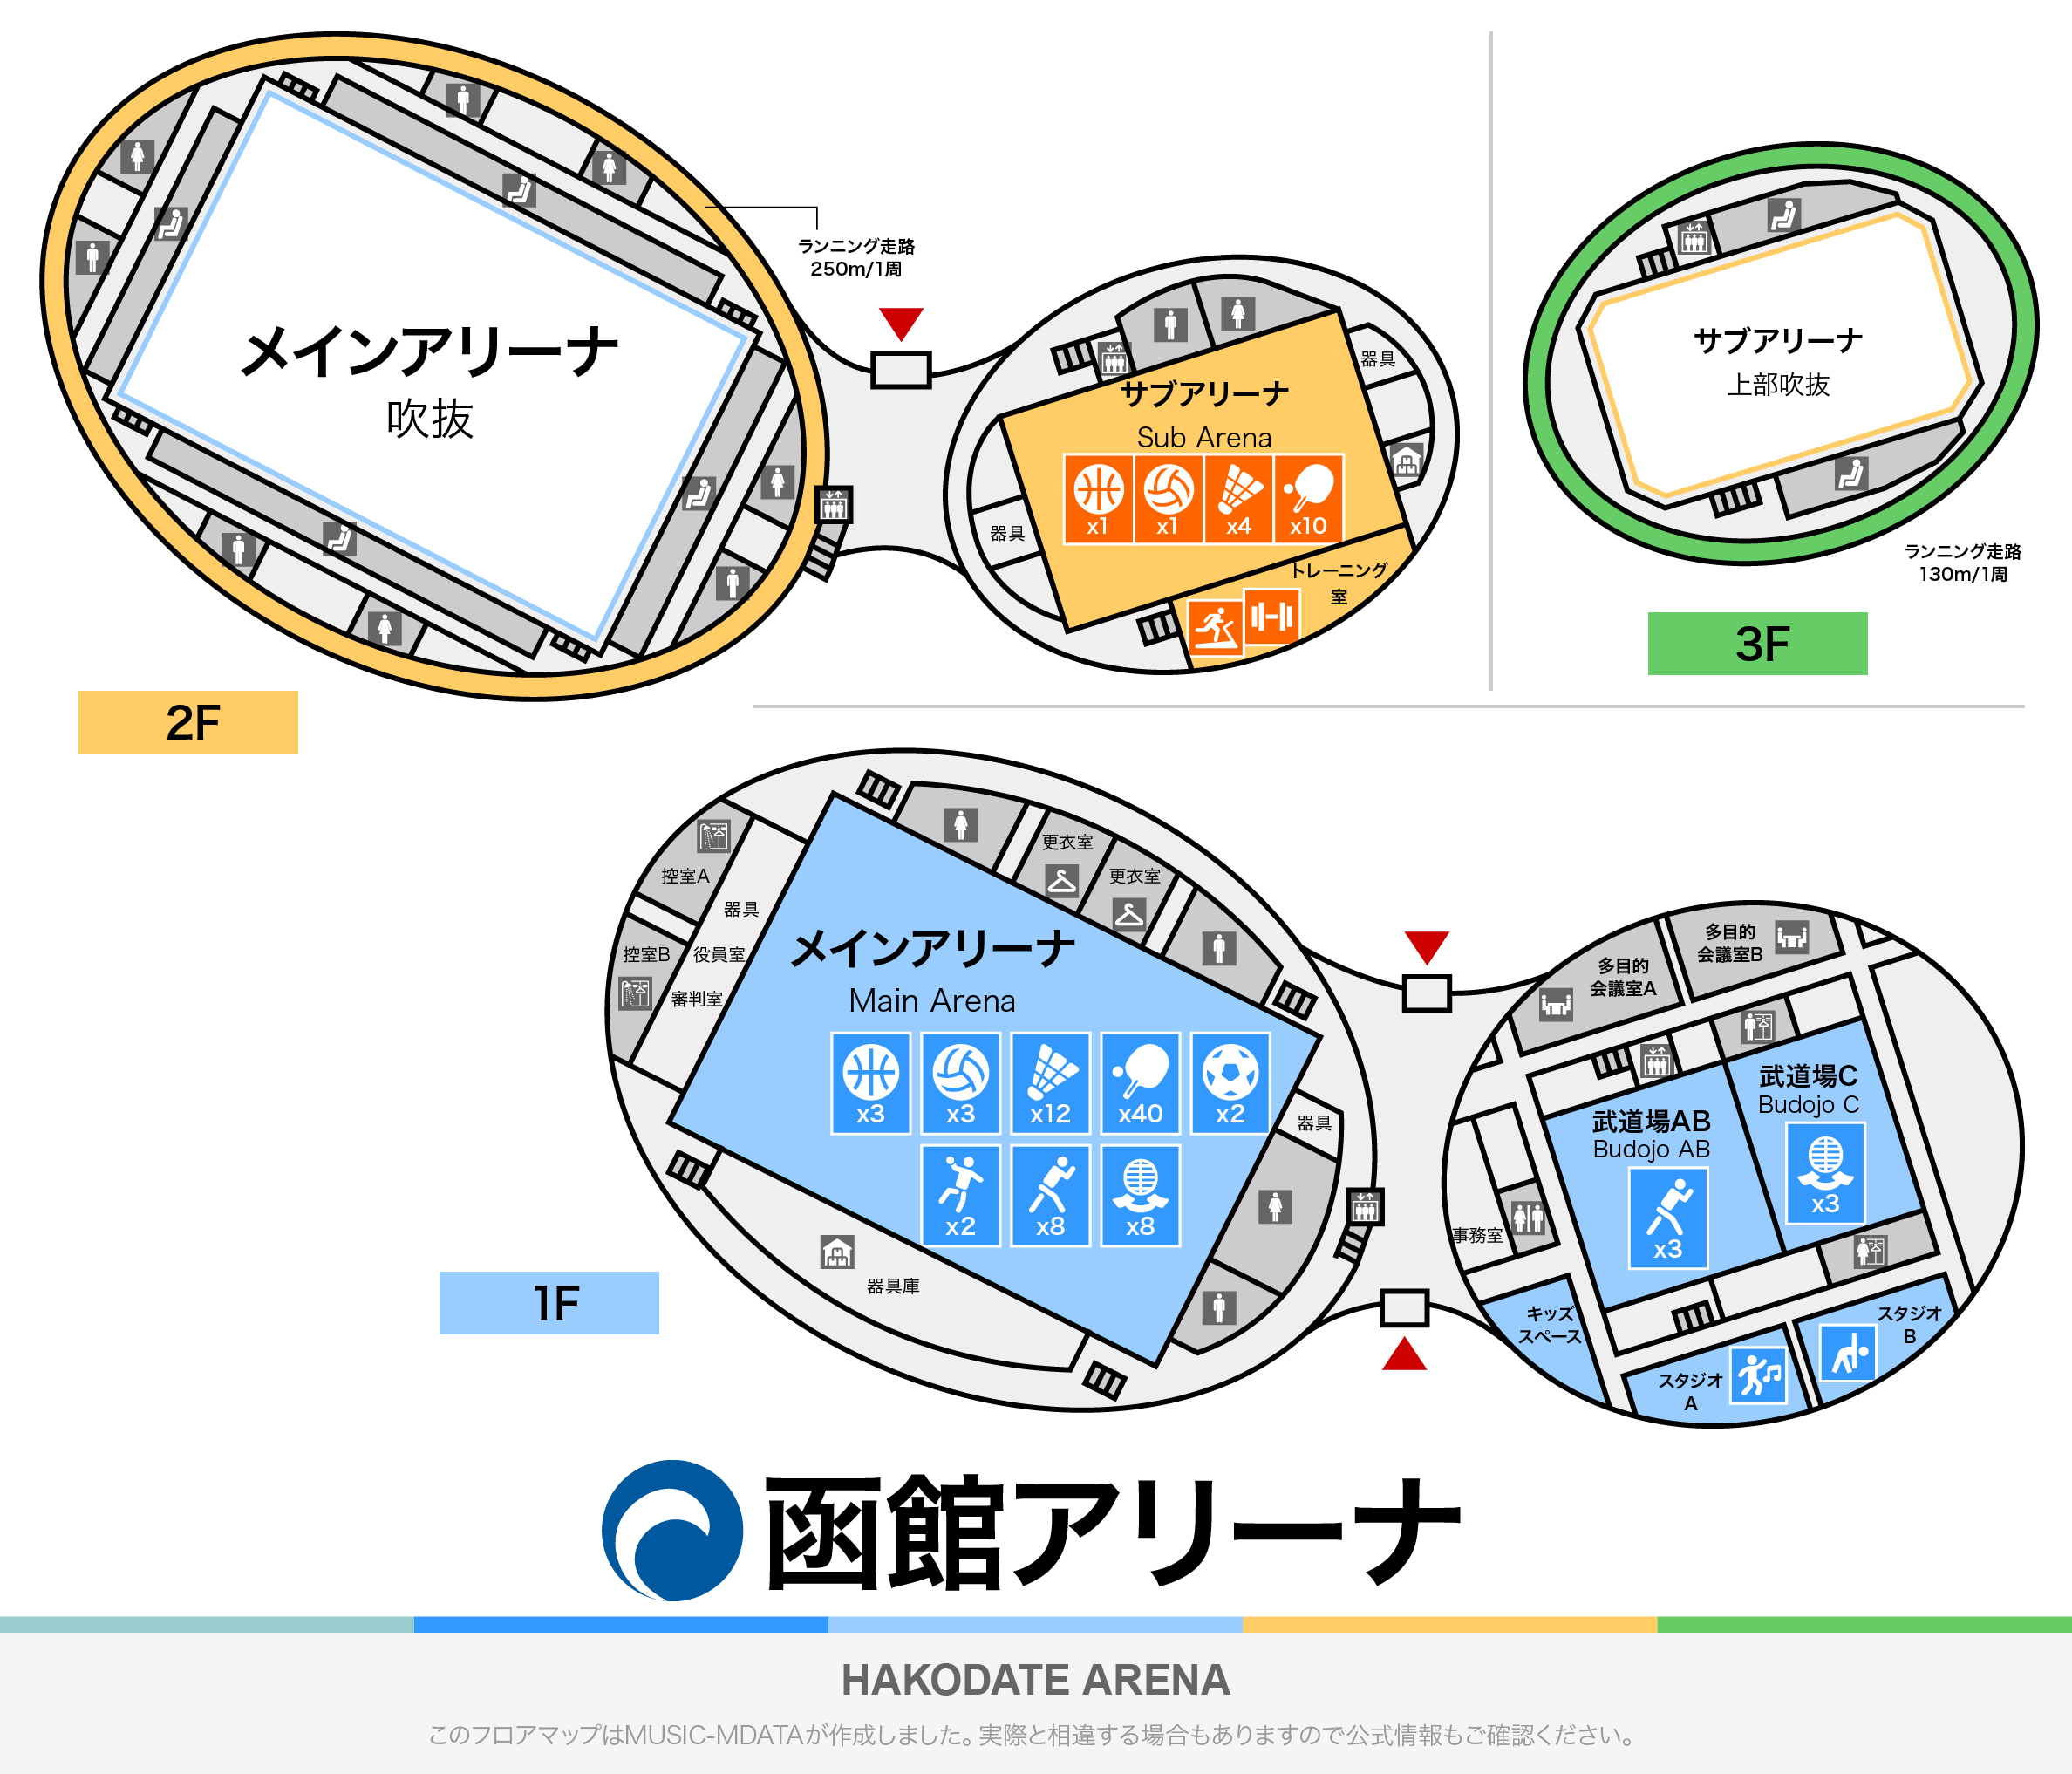 函館アリーナのフロアマップ・体育館